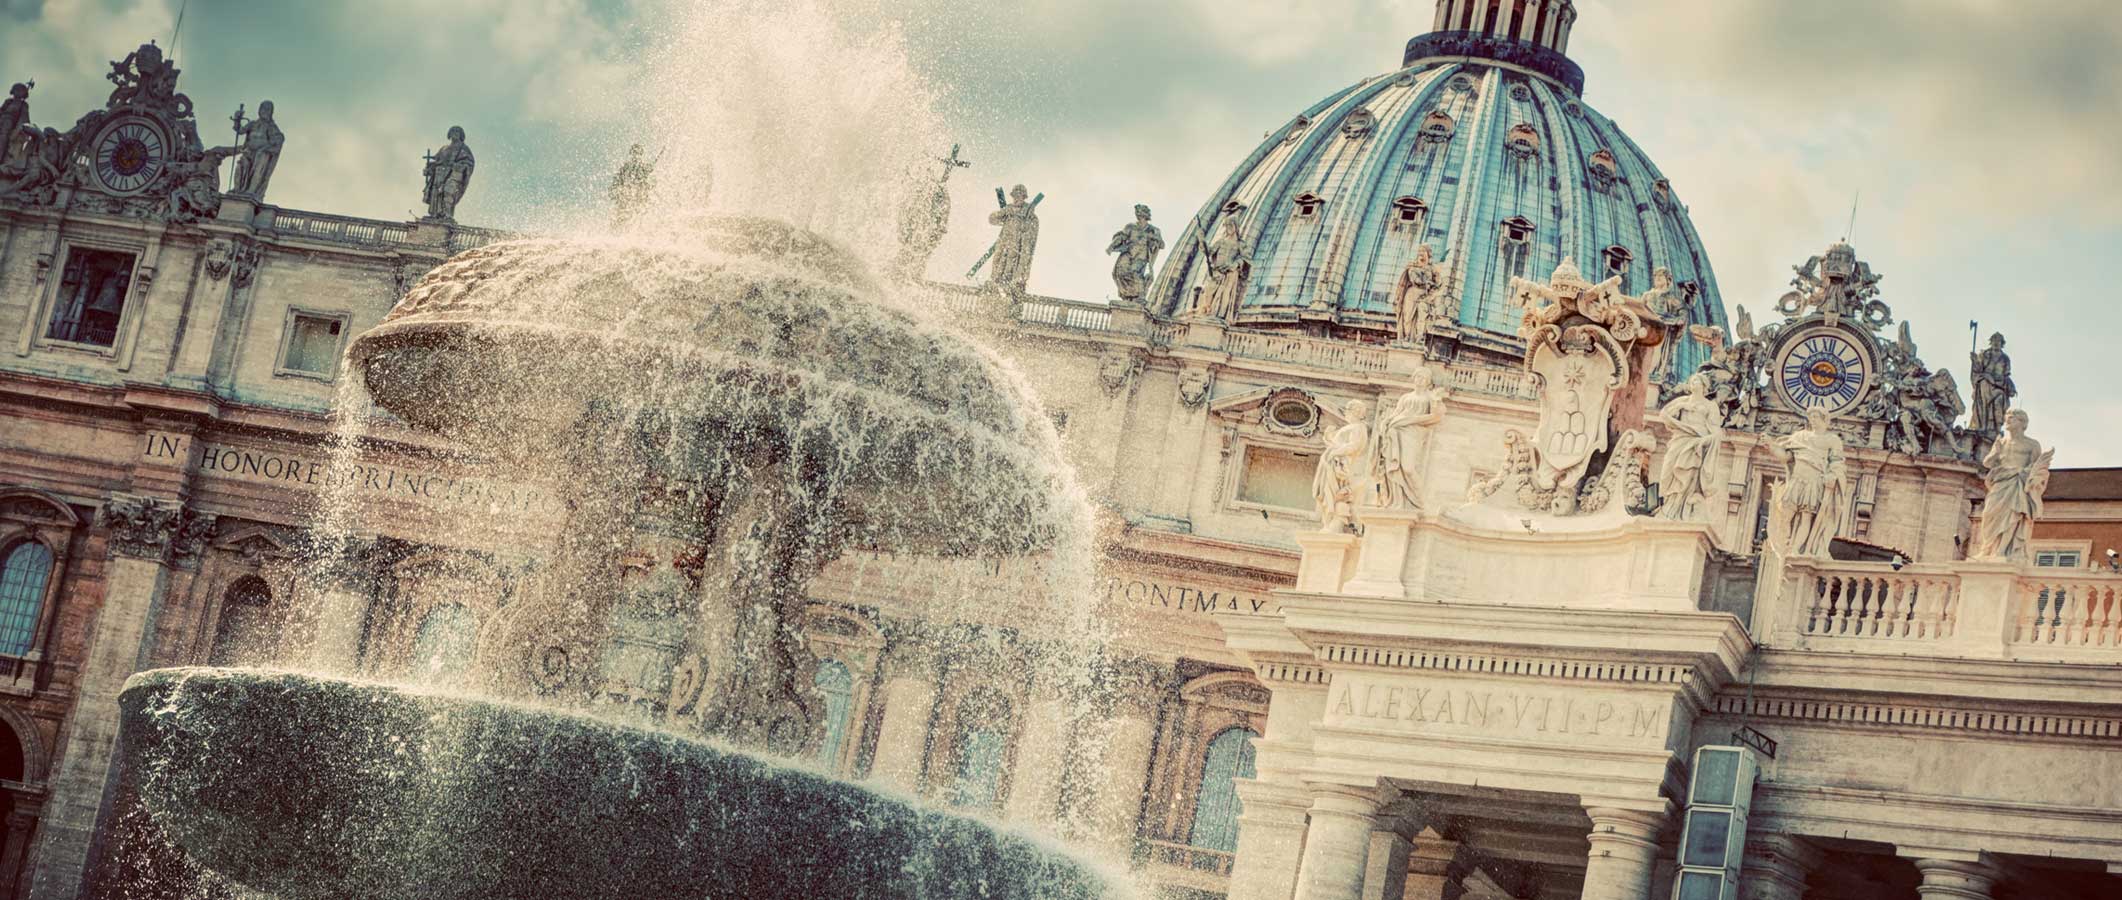 Photographie d'une fontaine d'eau devant la Cité du Vatican